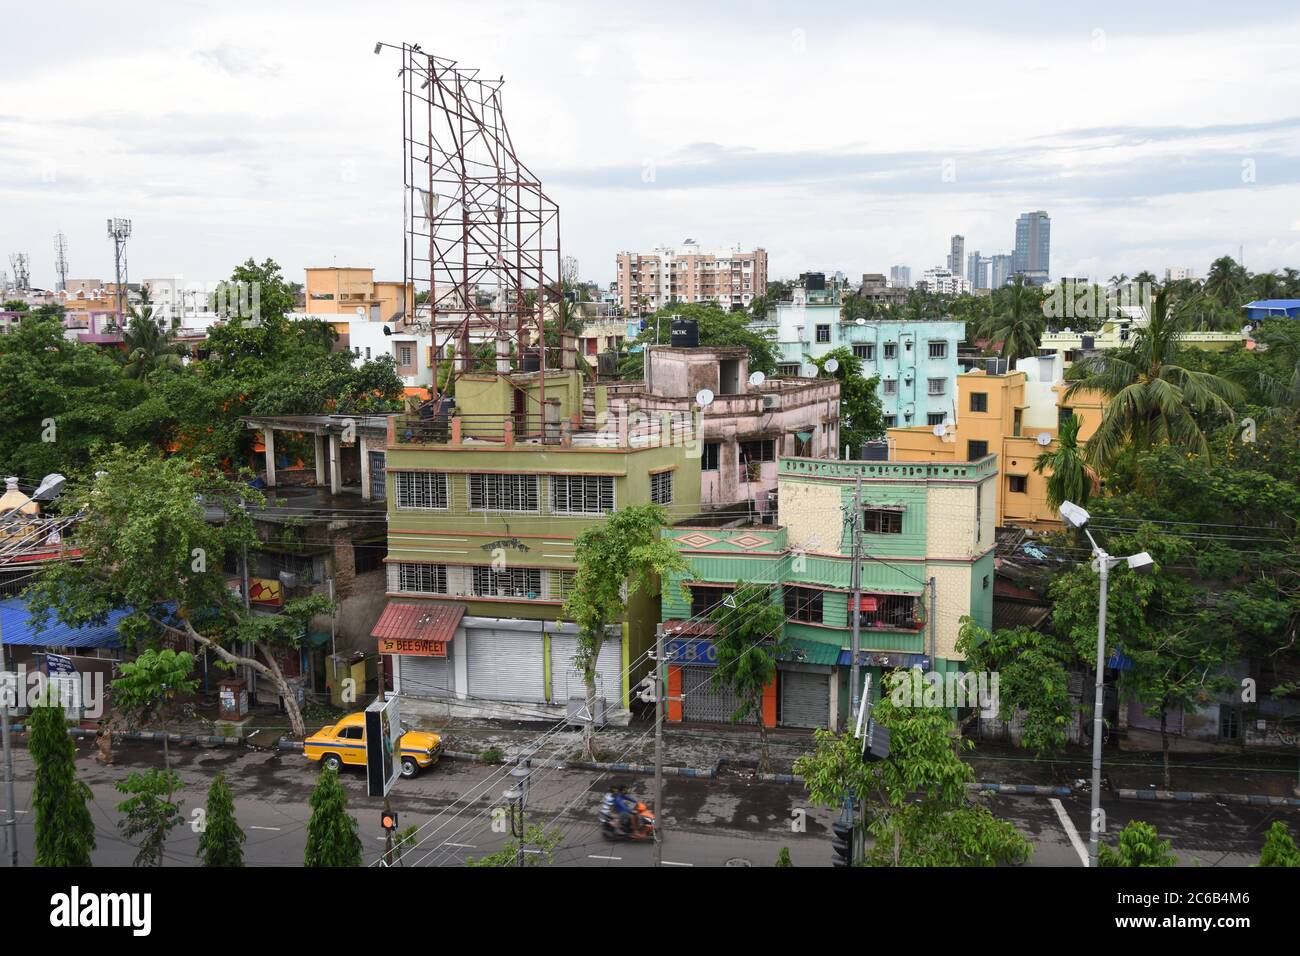 Kalikapur residential area, Kolkata, India. Stock Photo